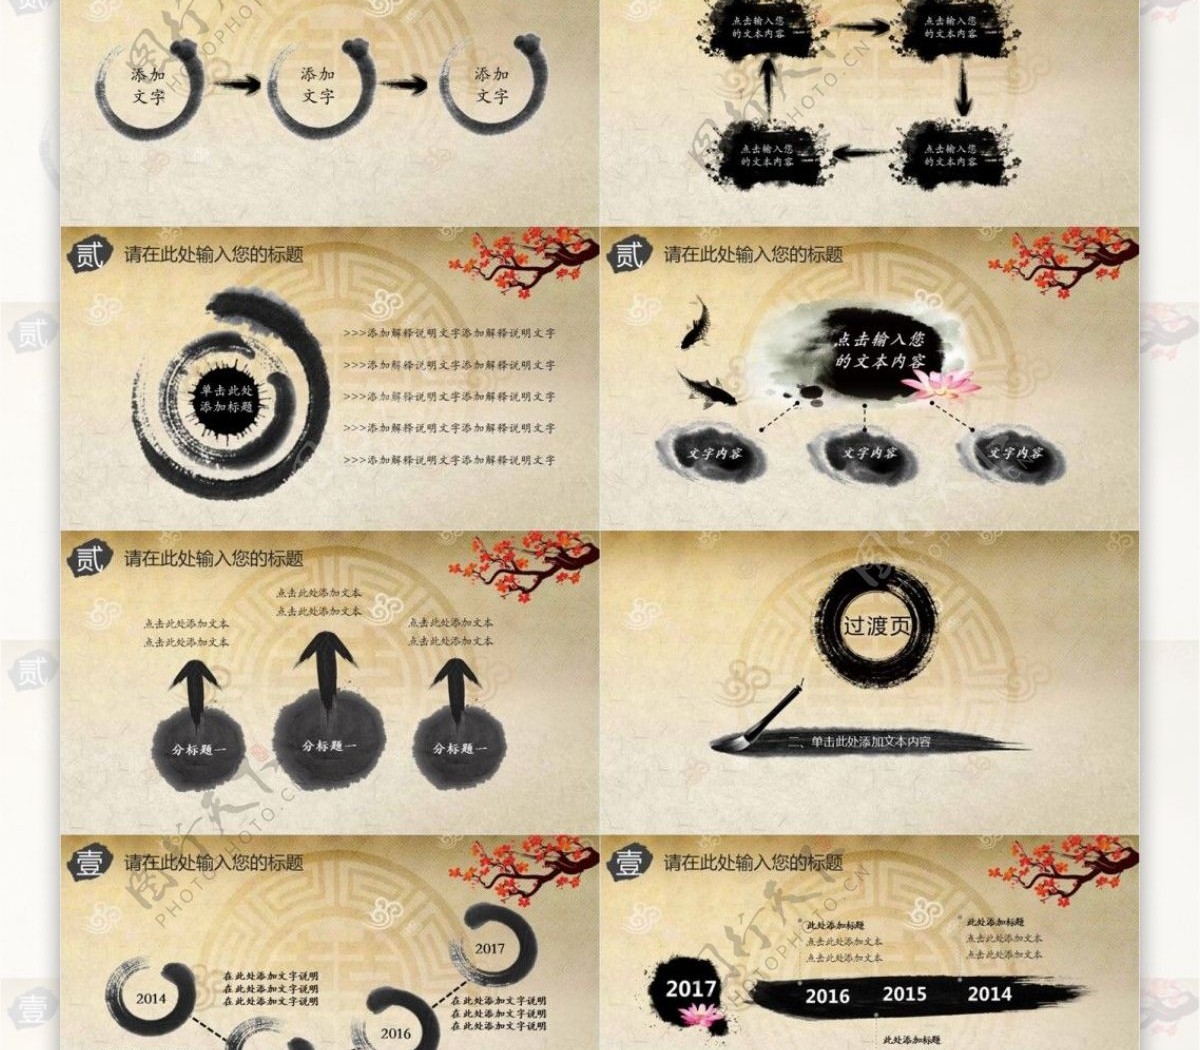 古典中国戏曲文化宣传PPT模板